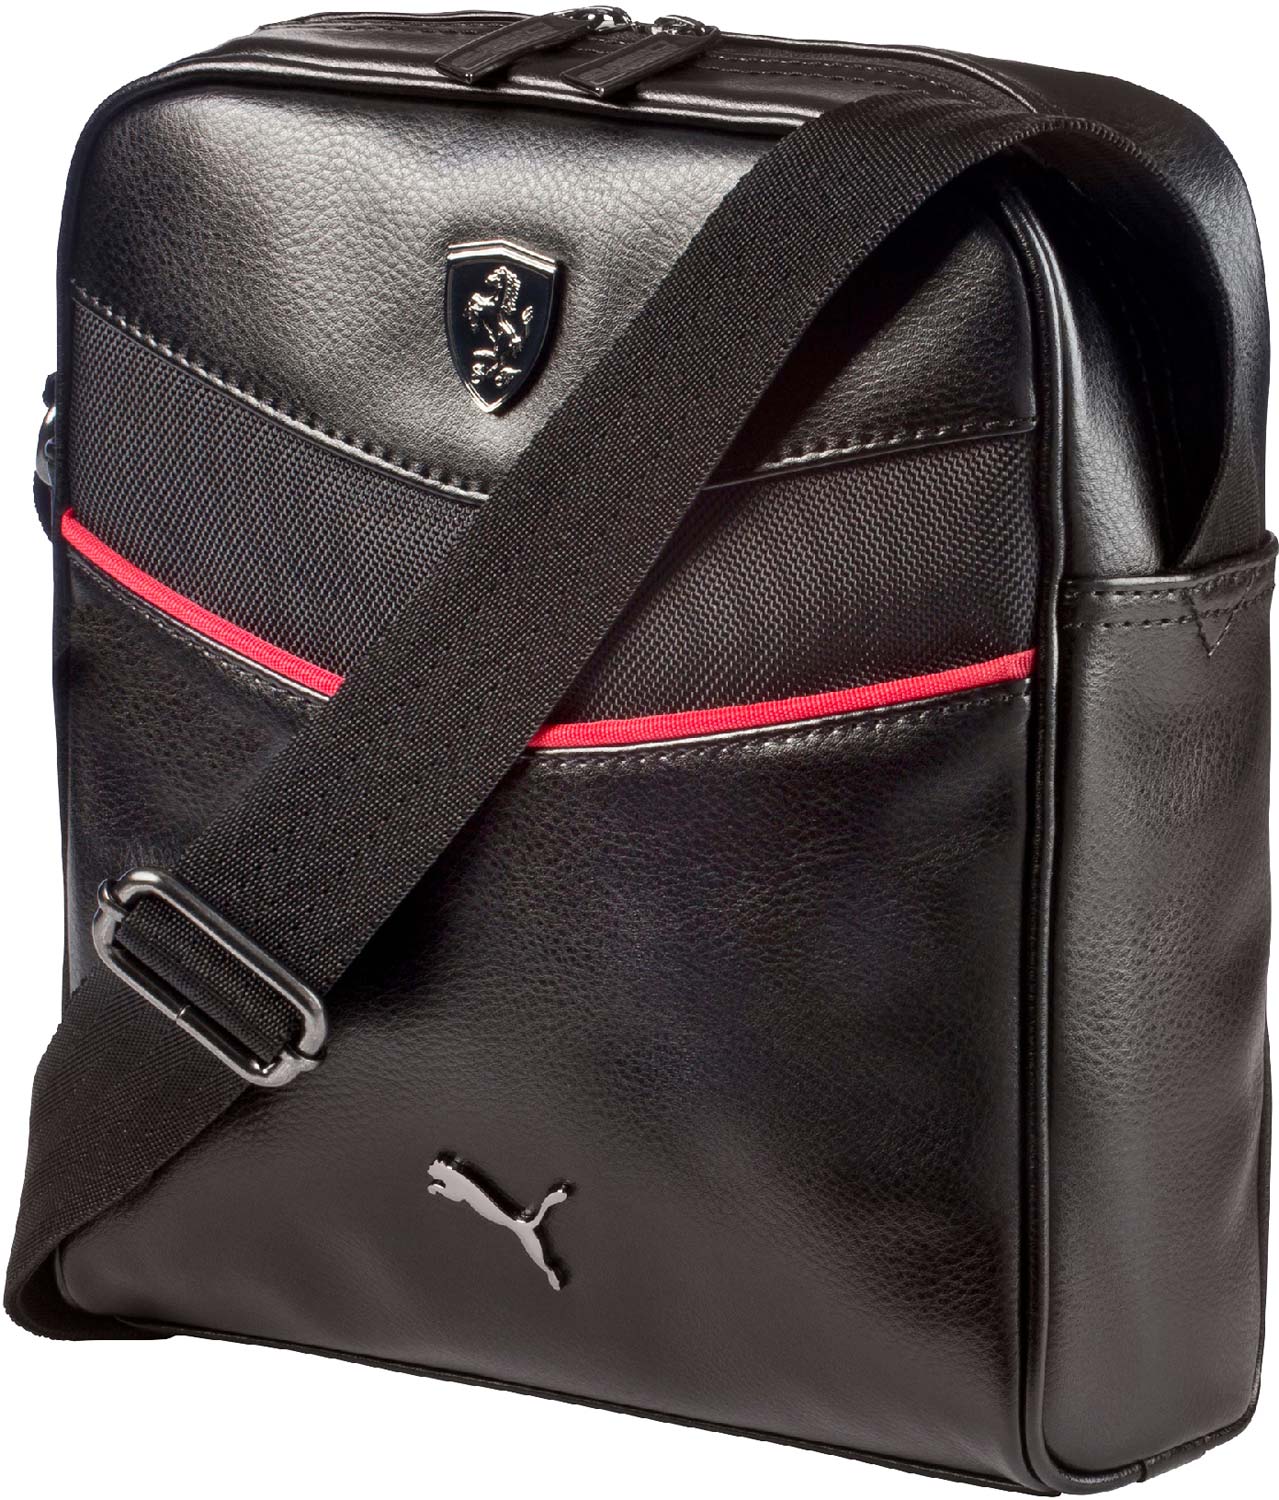 Luxury bag over shoulder